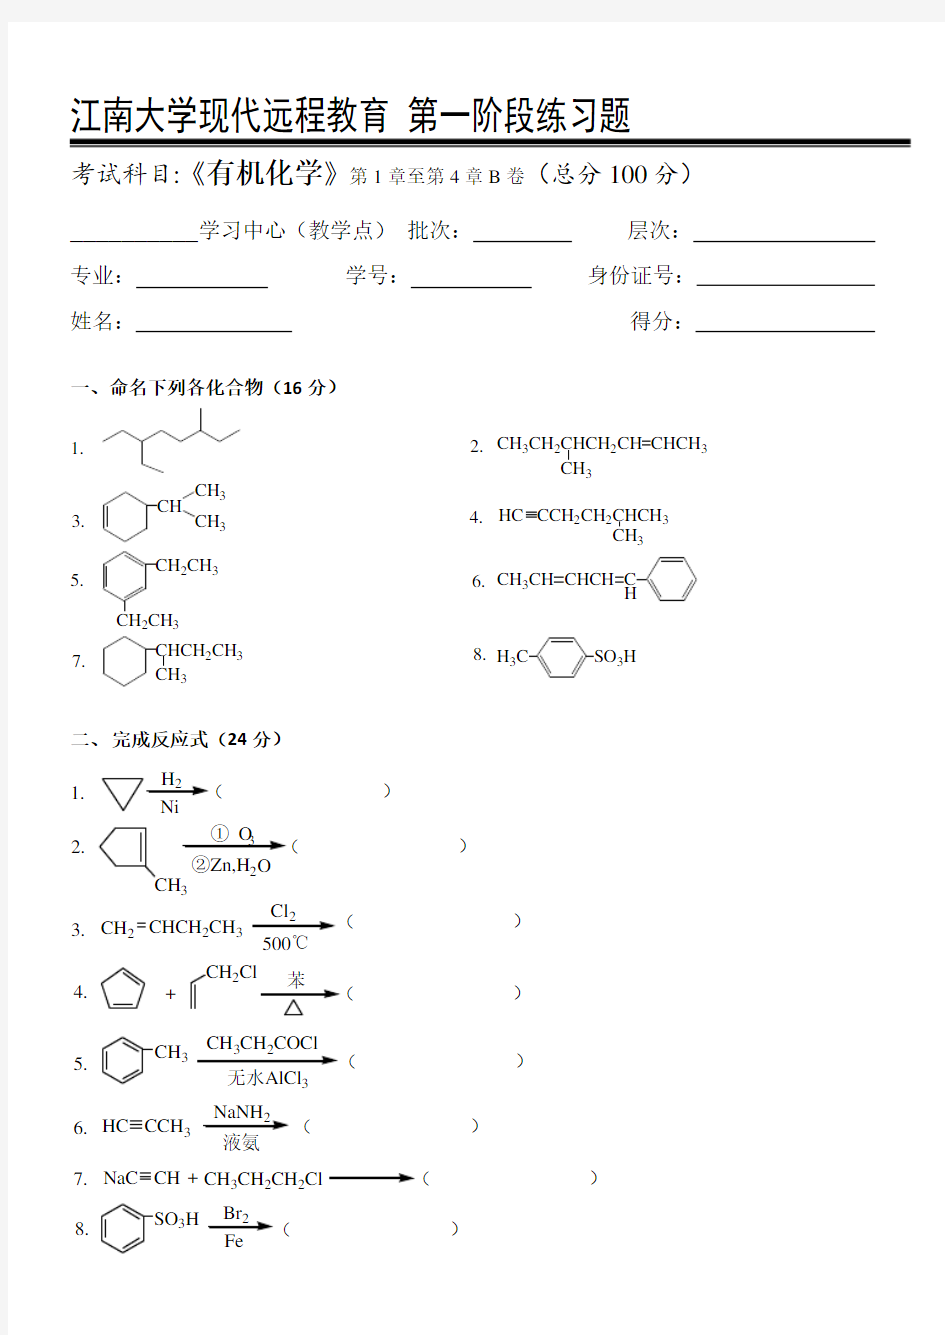 有机化学I第1阶段练习题江大考试题库及答案一科共有三个阶段,这是其中一个阶段。答案在最